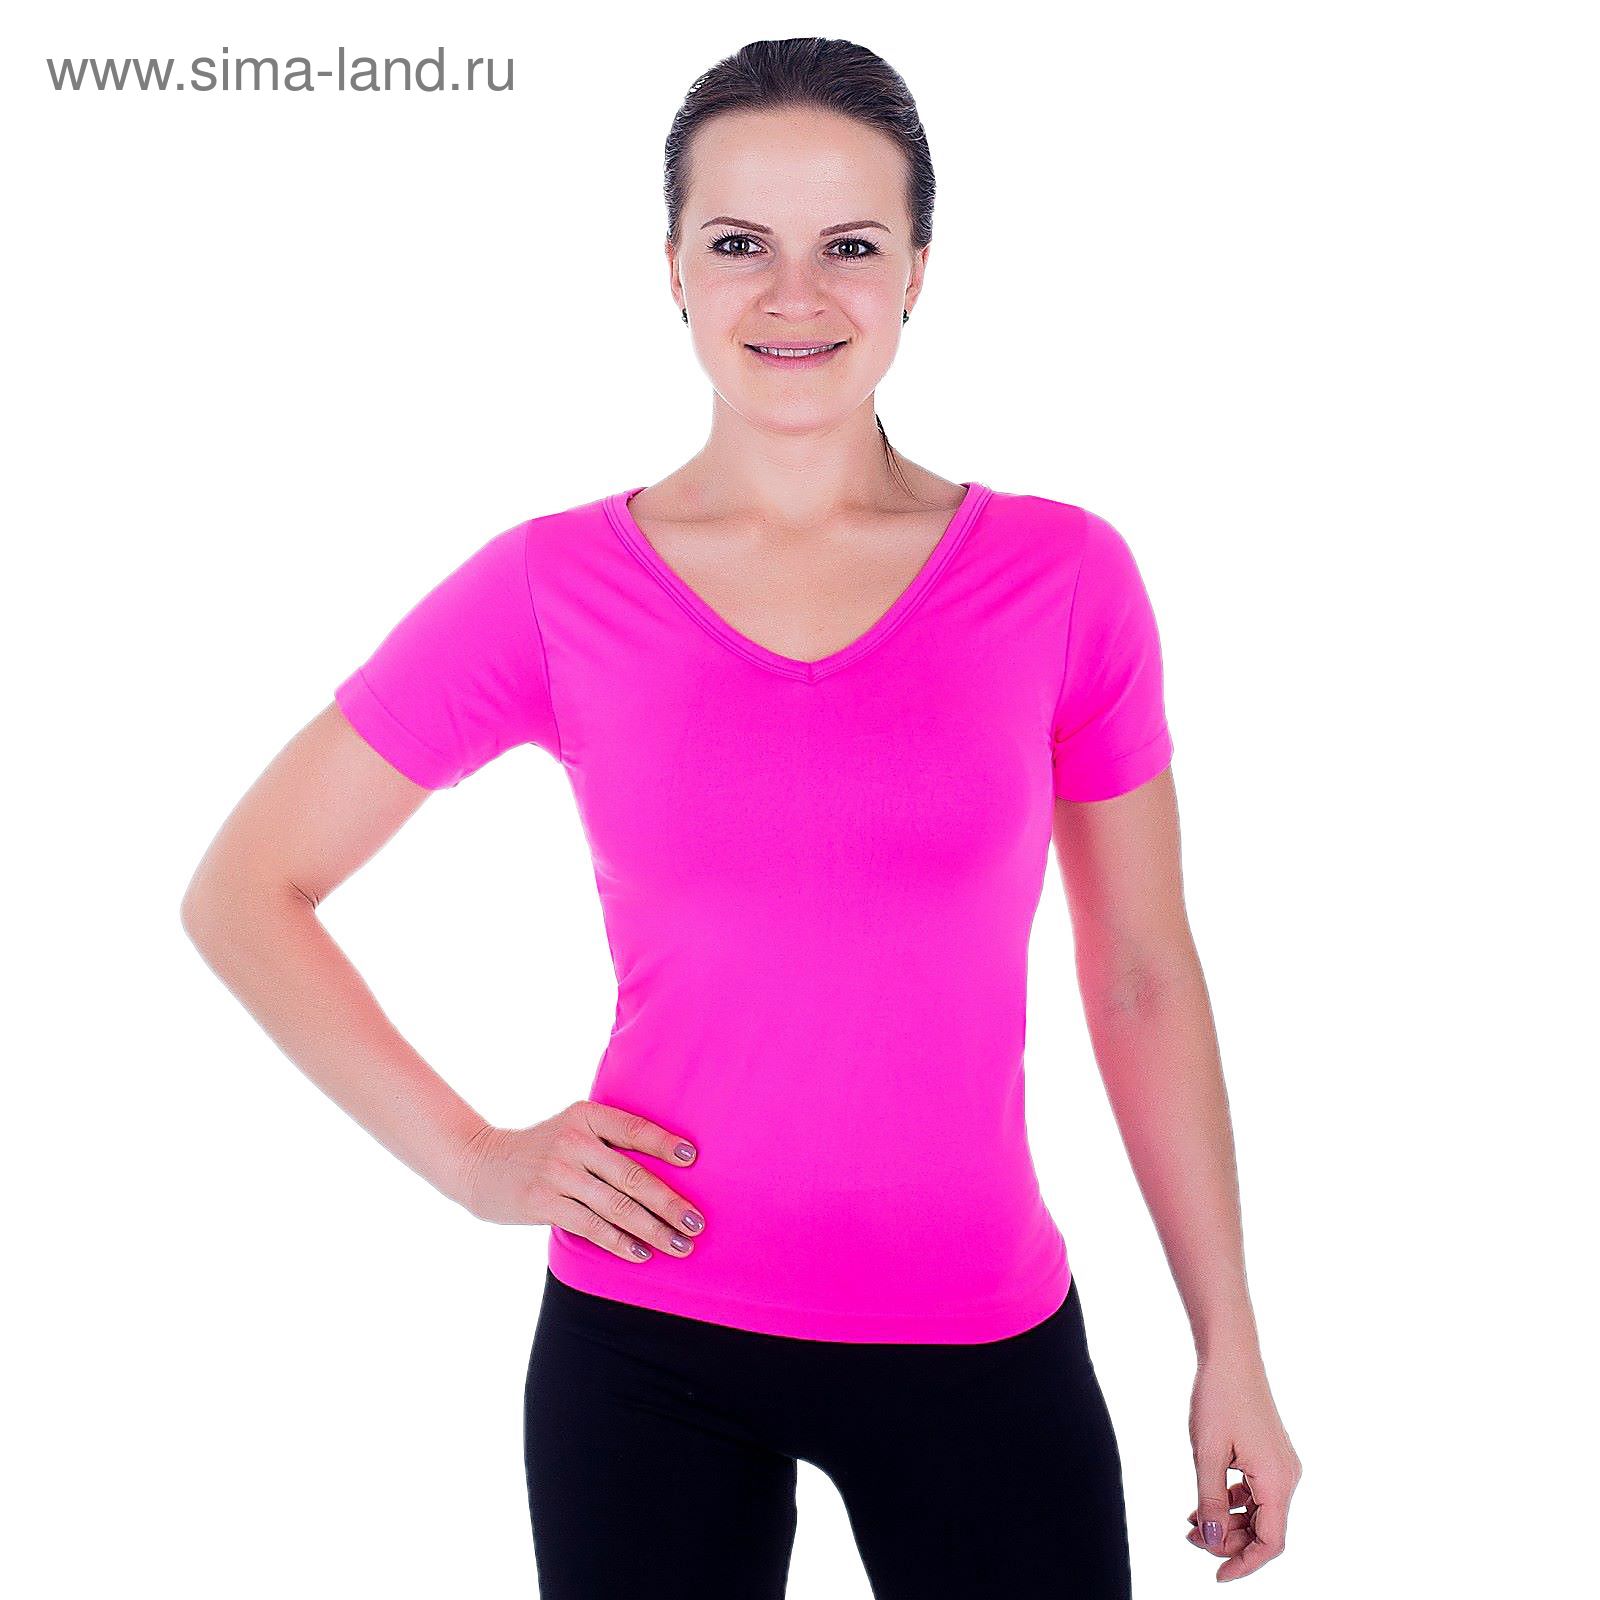 Спортивная футболка ONLITOP Balance rose, размер S-M (42-44)